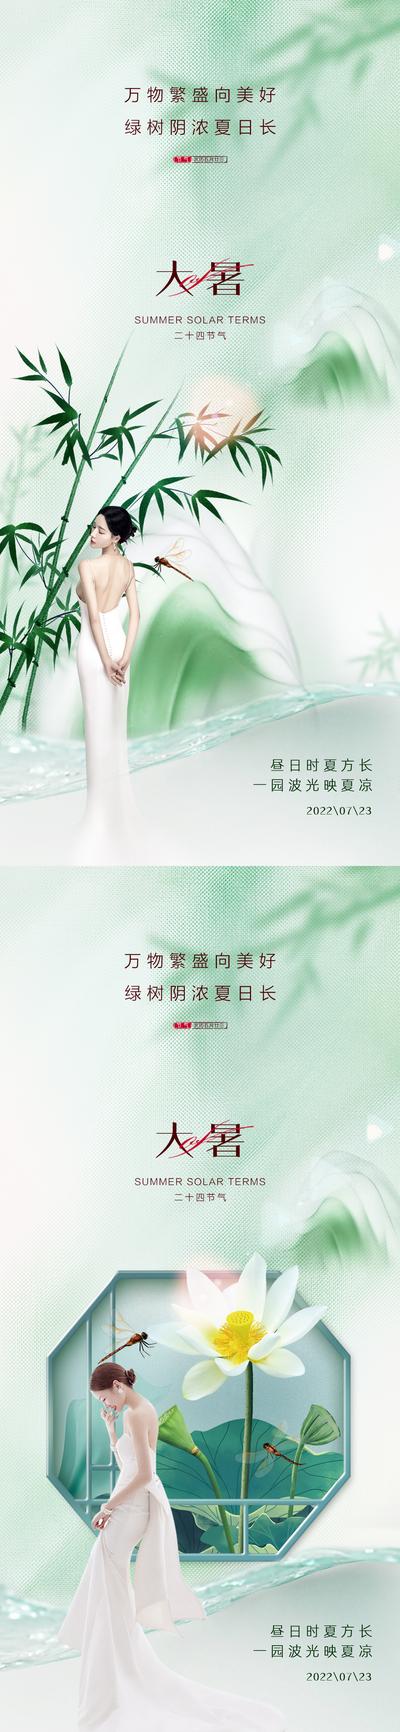 【南门网】广告 海报 地产 大暑 医美 人物 荷花 竹叶 系列 小暑